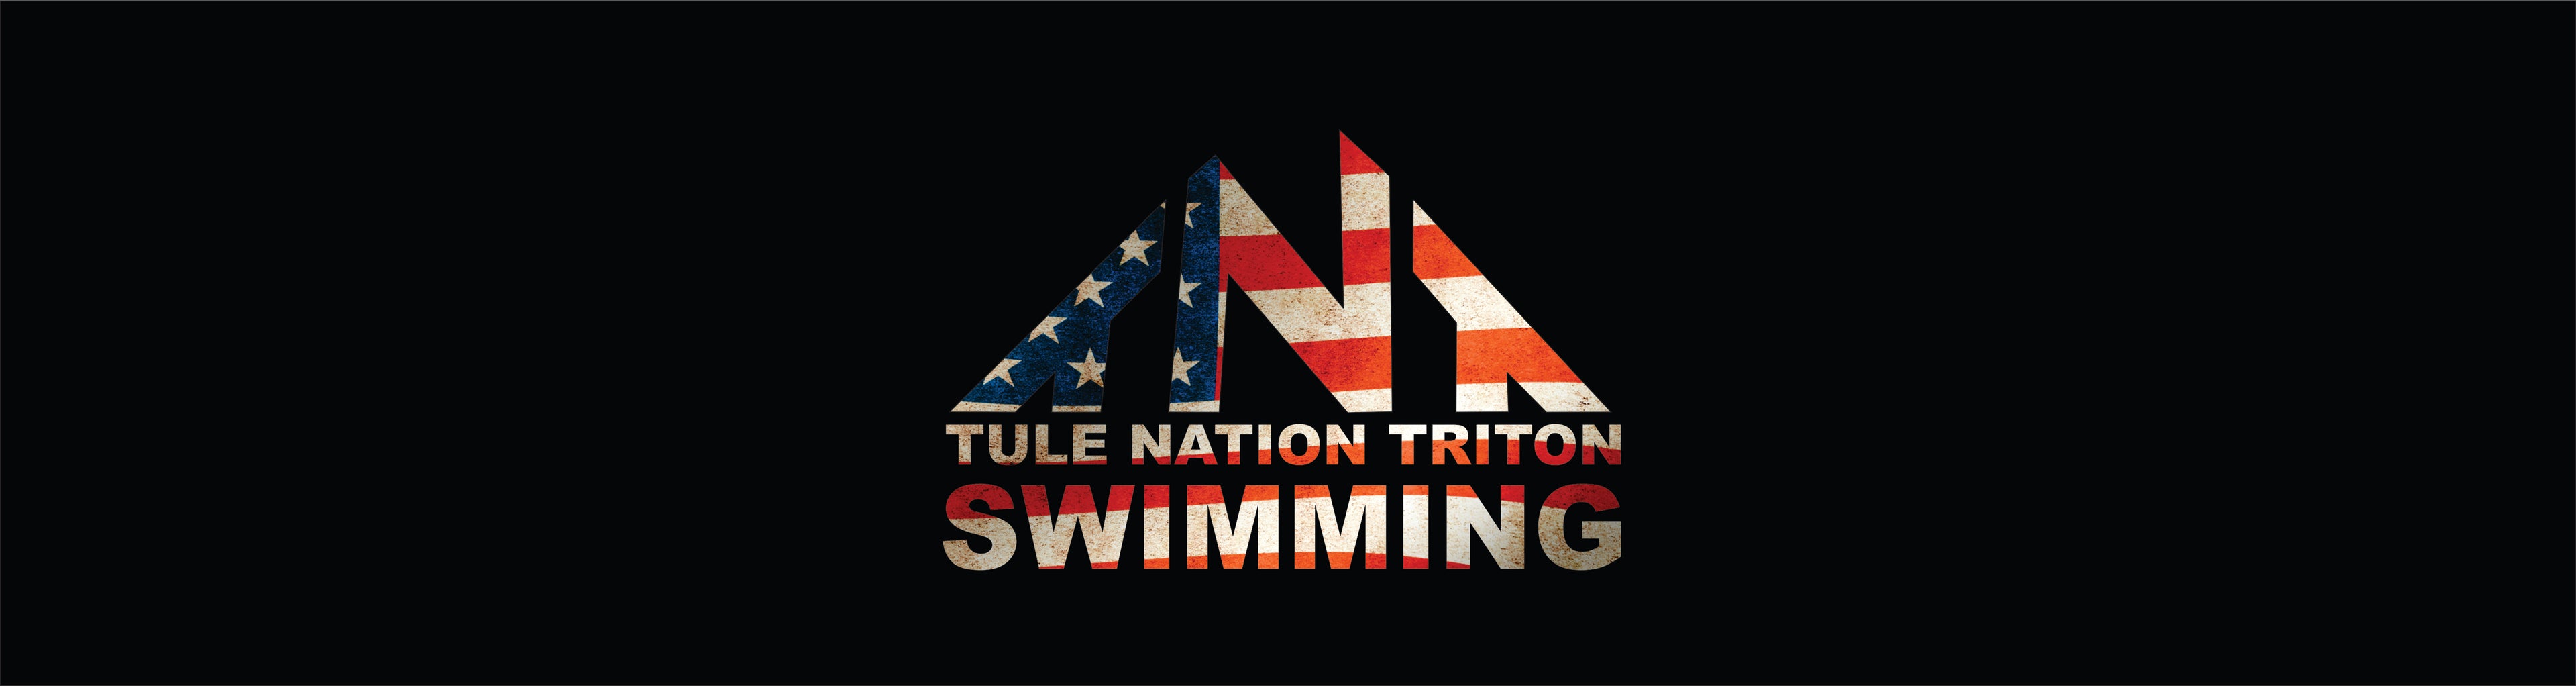 TNT Swimming